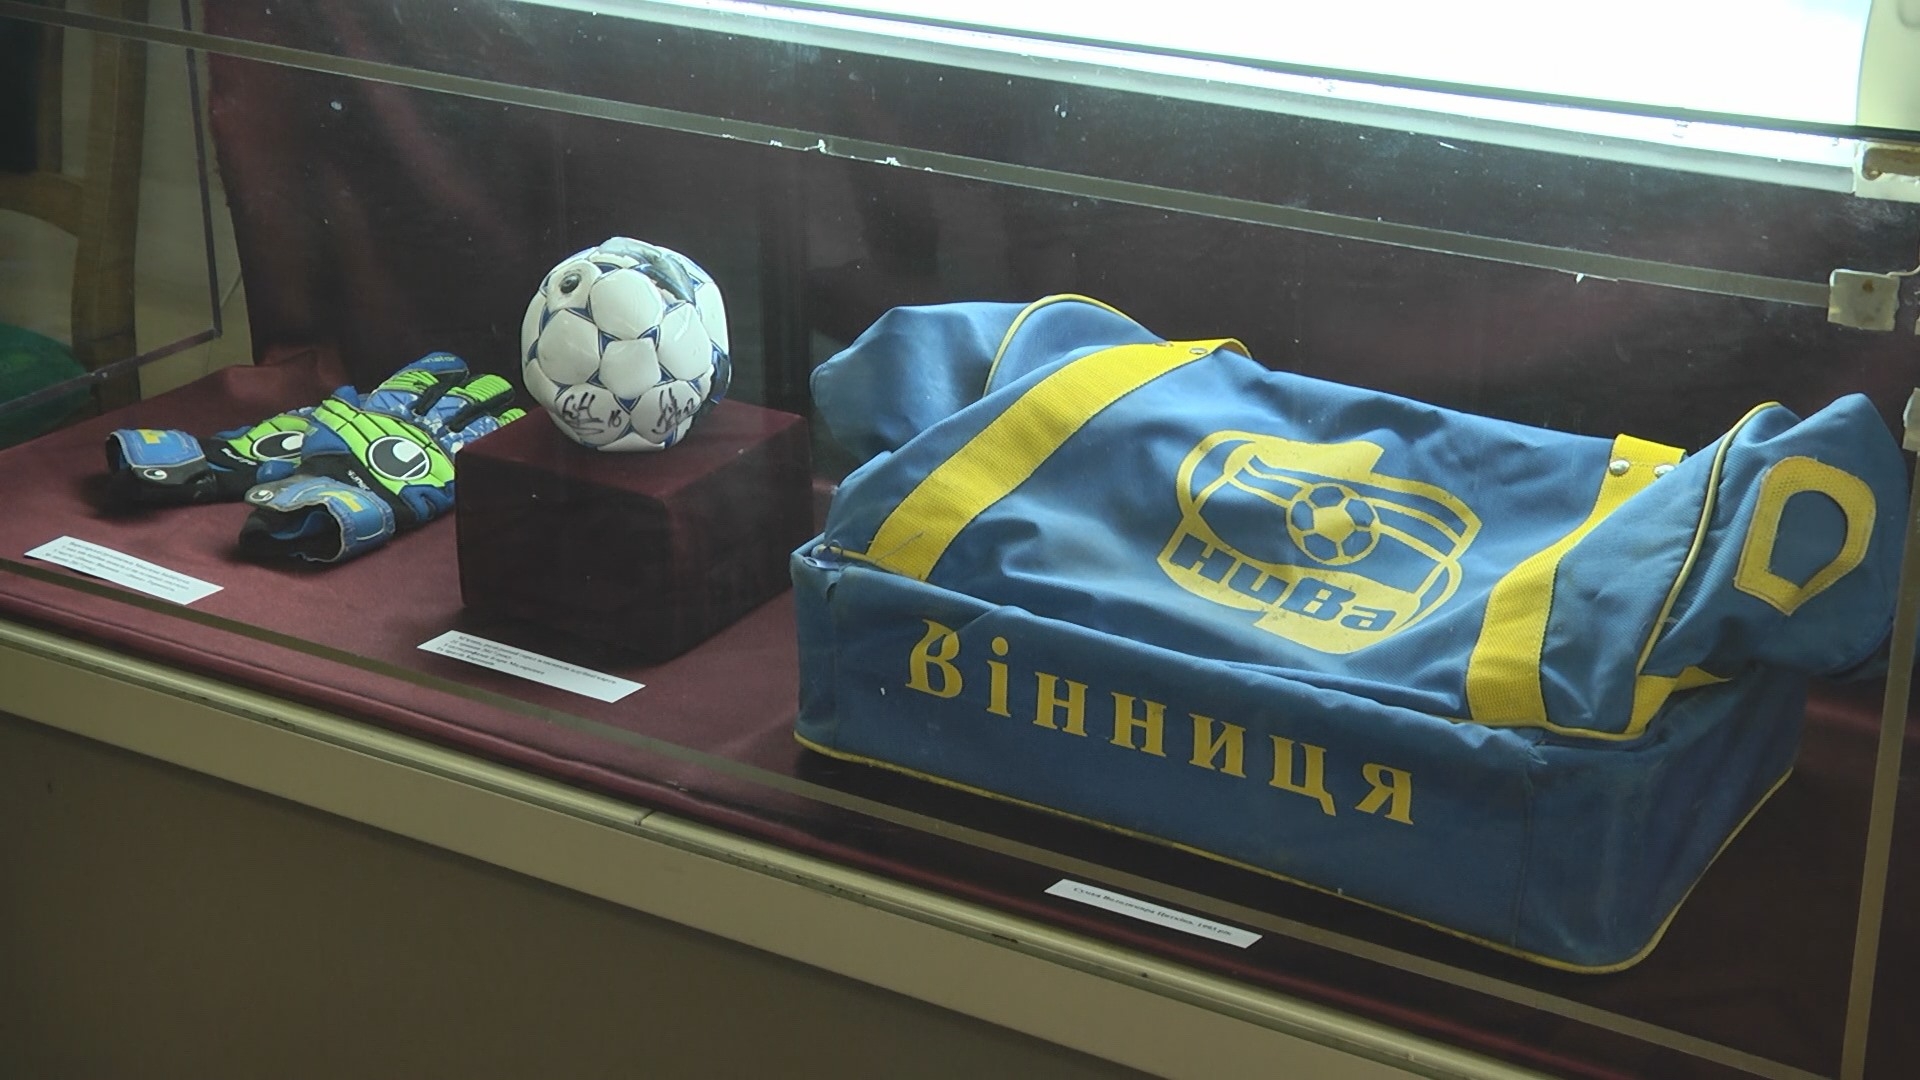 Де та коли у Вінниці пройшов перший футбольний матч, вінничани можуть дізнатися на виставці